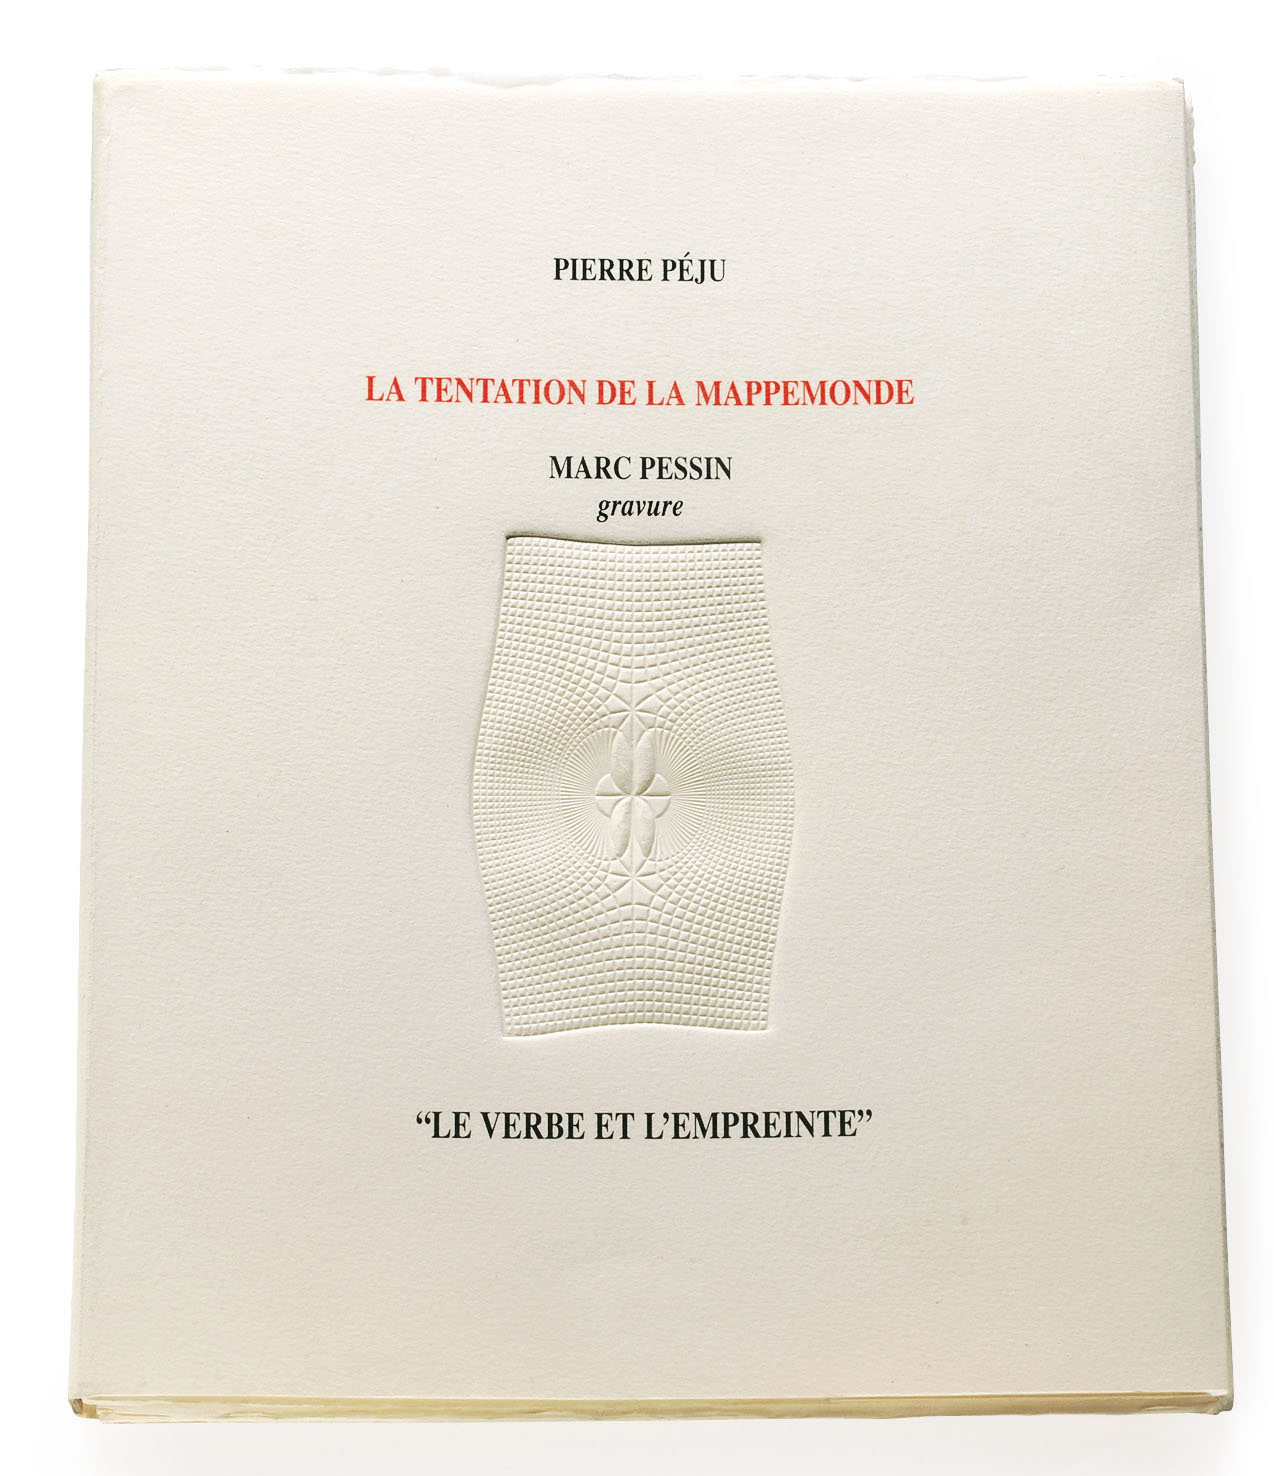 Couverture de "La Tentation de la mappemonde" de Pierre Péju